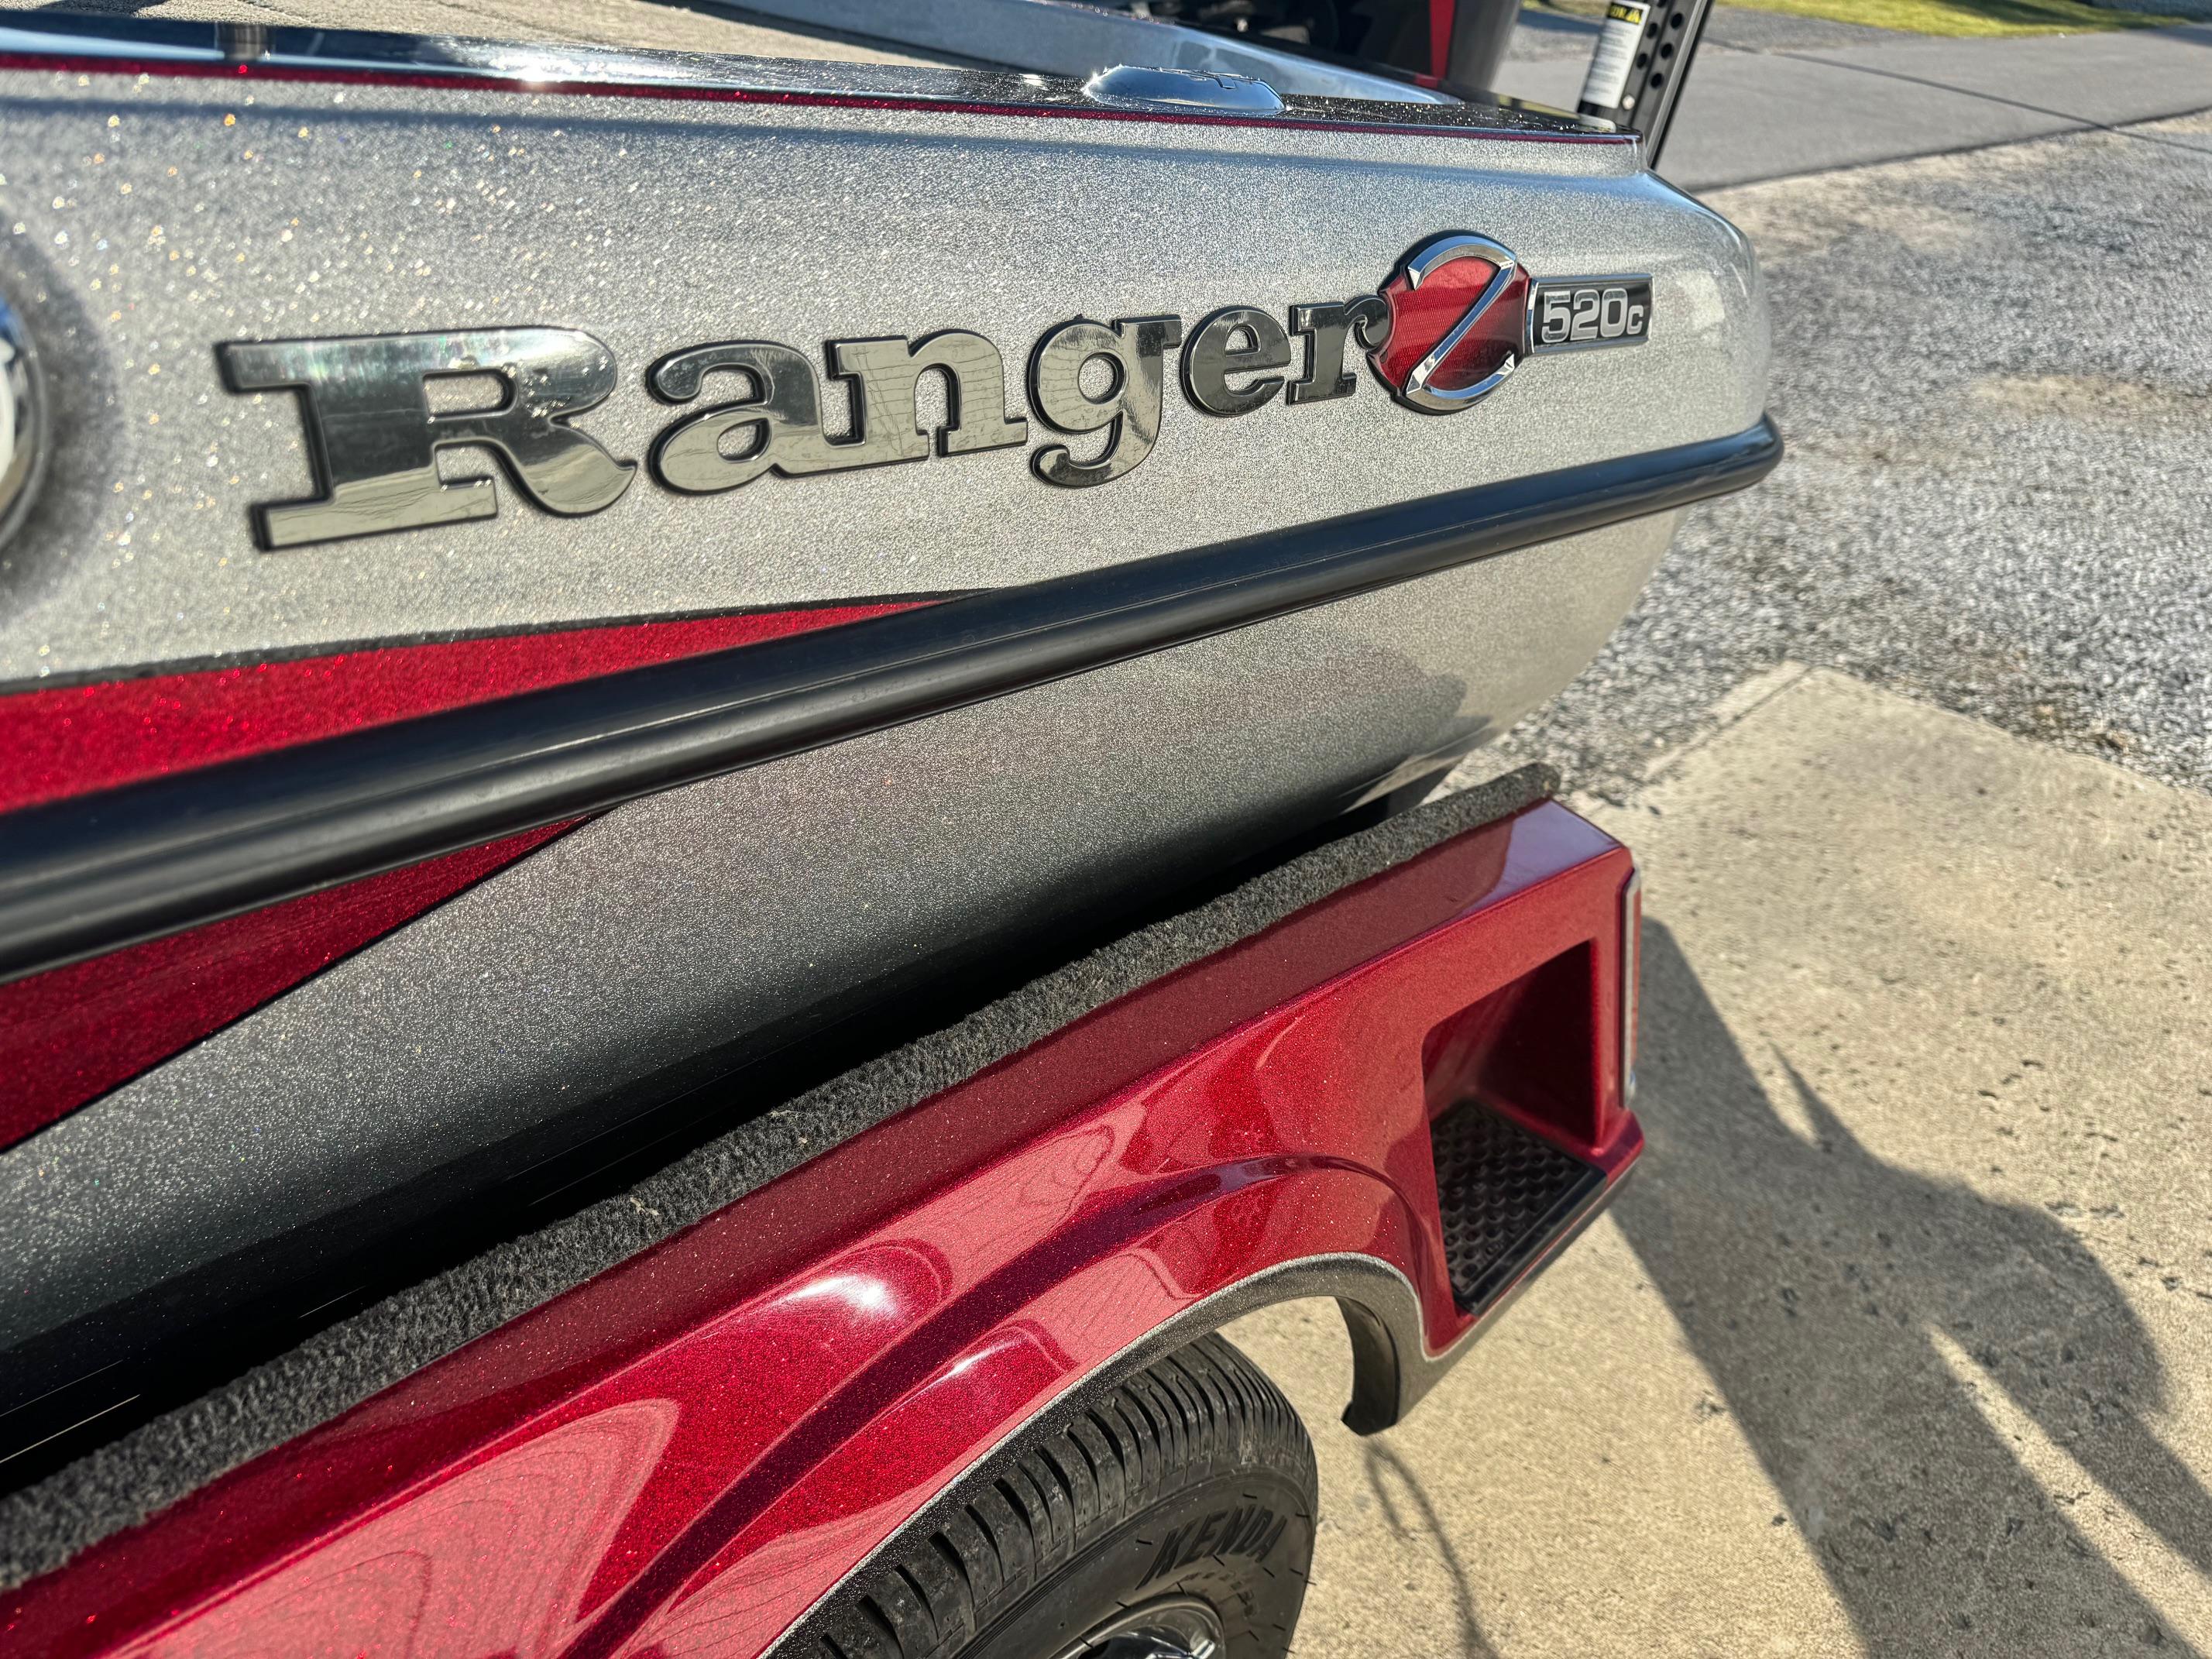 2020 Ranger Z520C